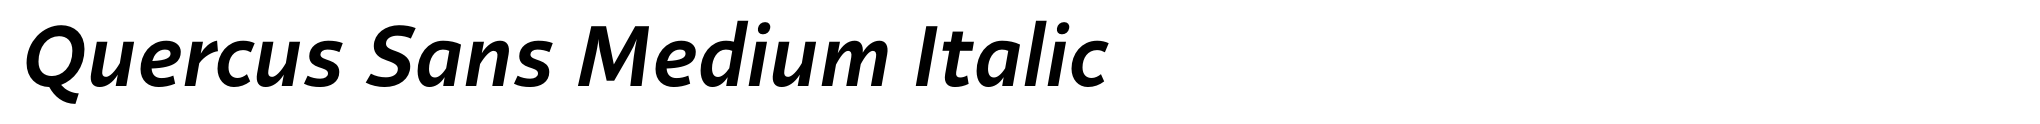 Quercus Sans Medium Italic image